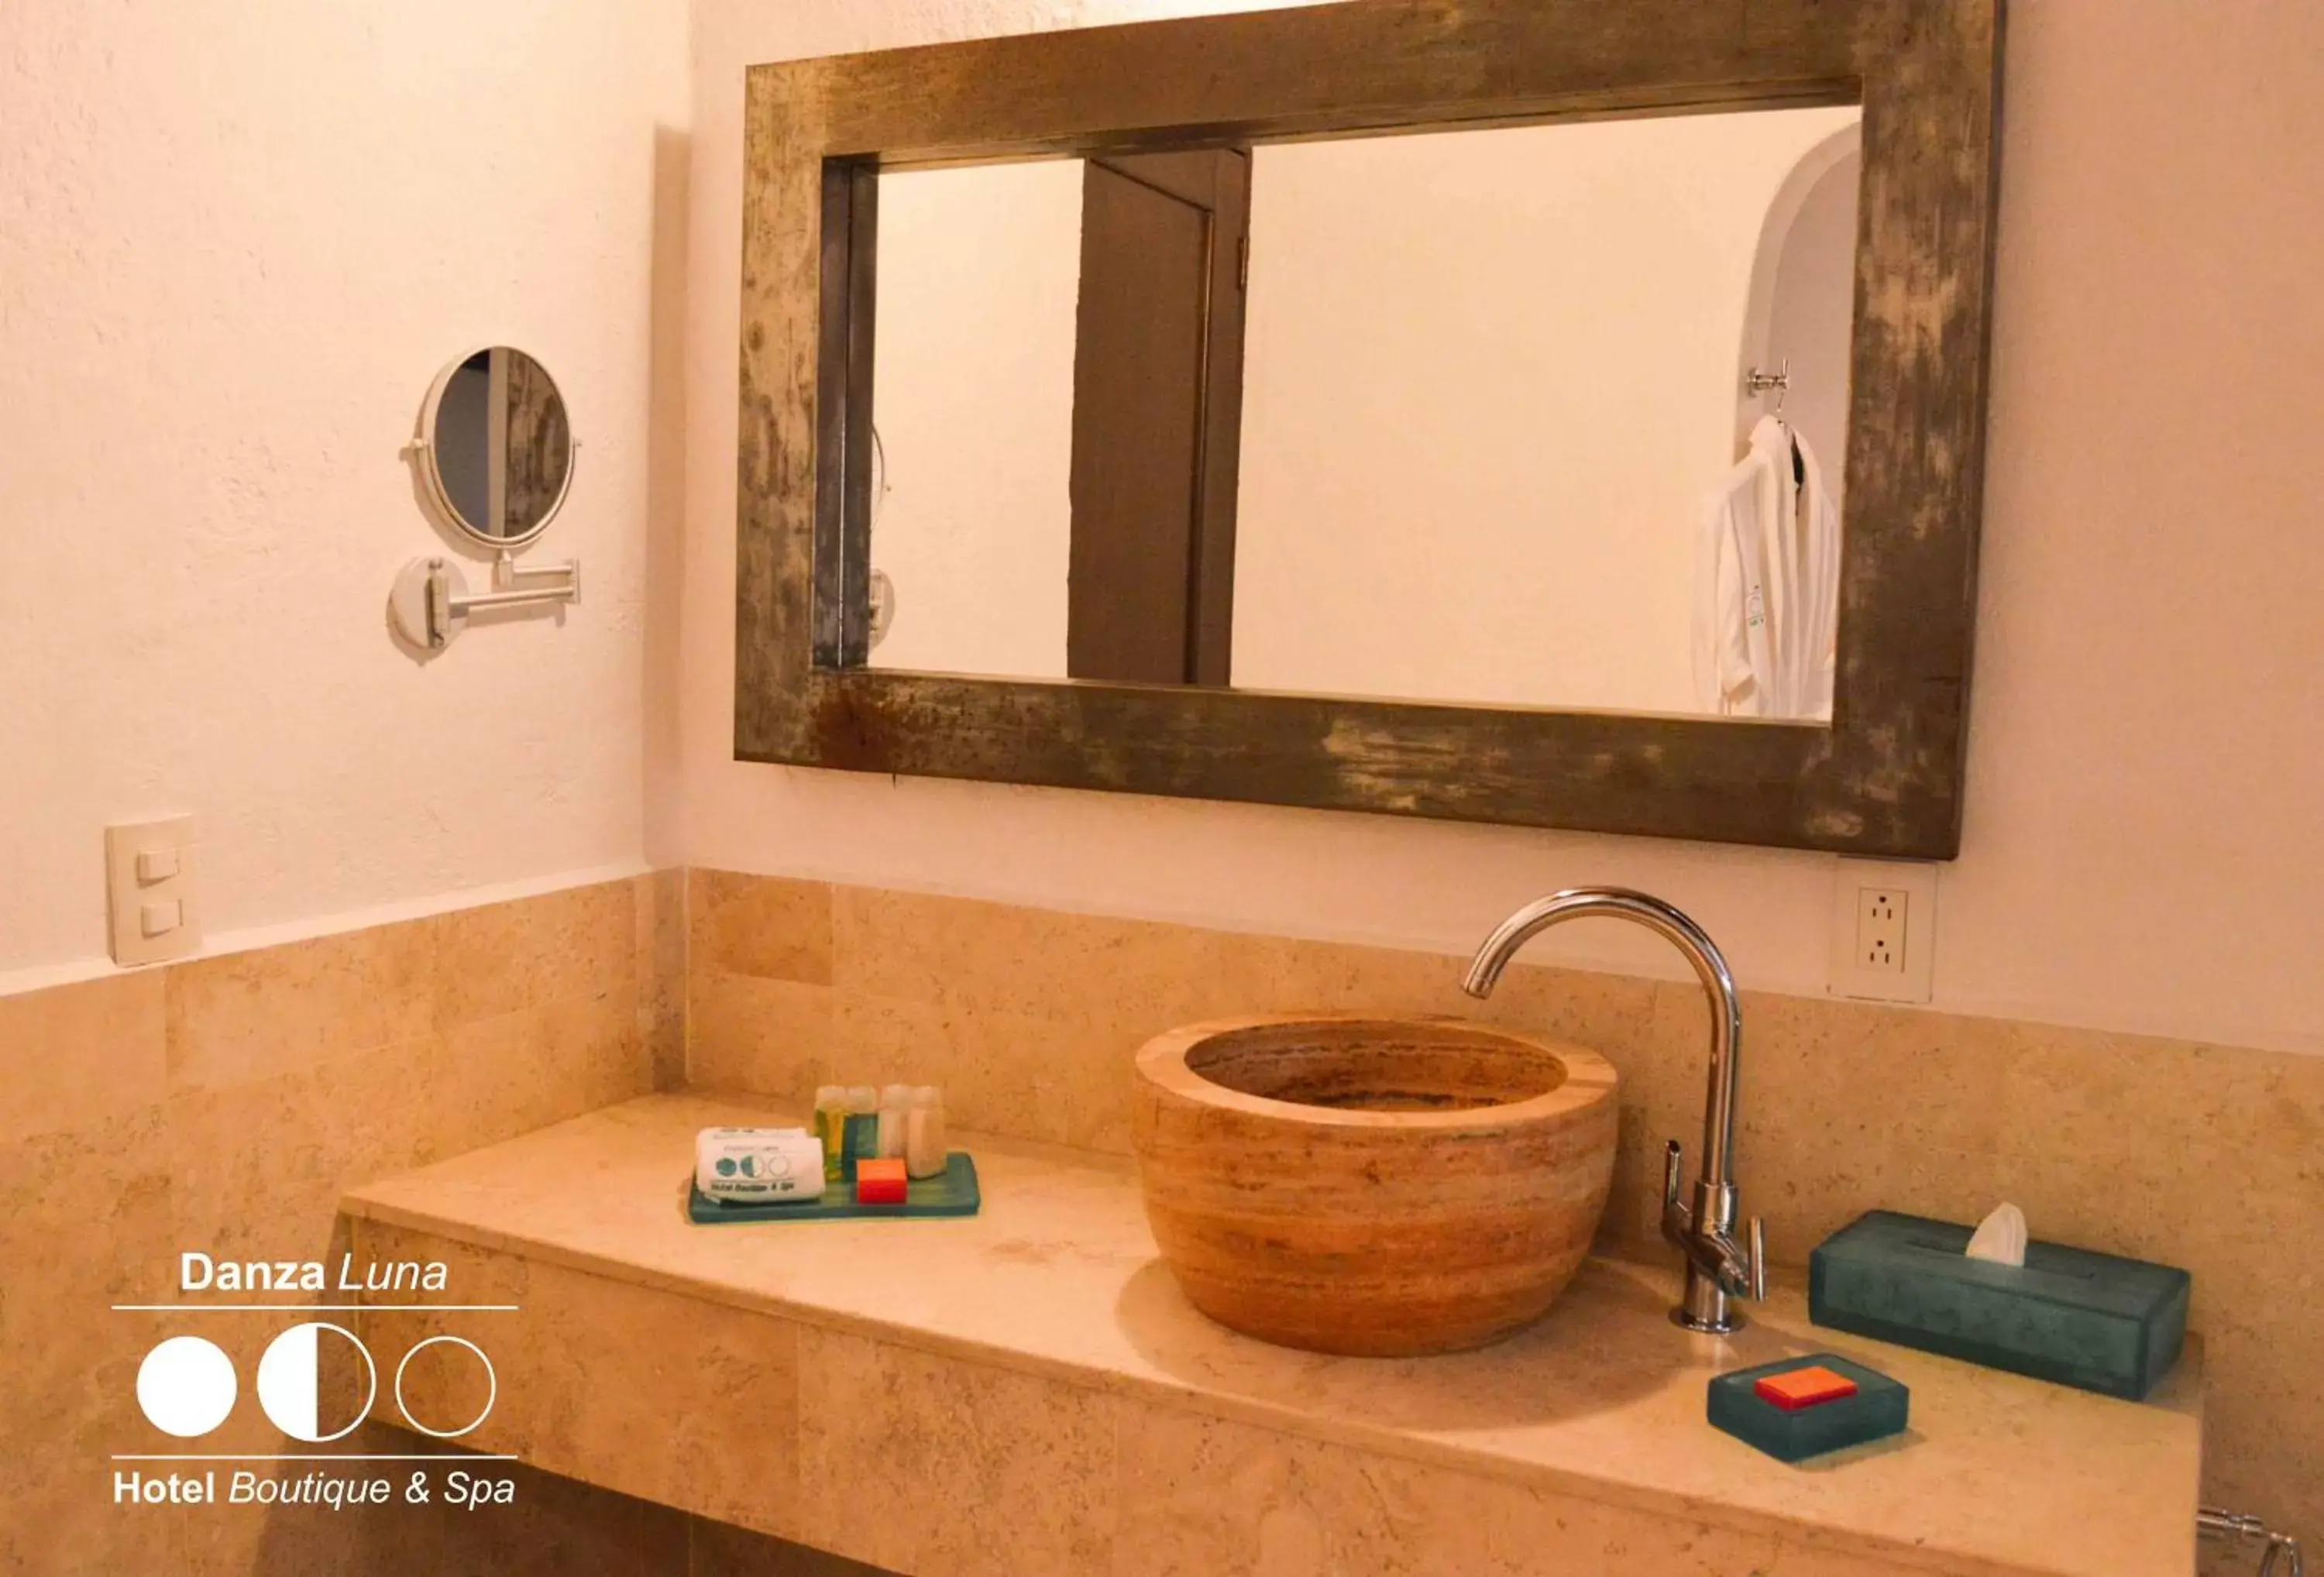 Shower, Bathroom in Danzaluna Hotel Boutique